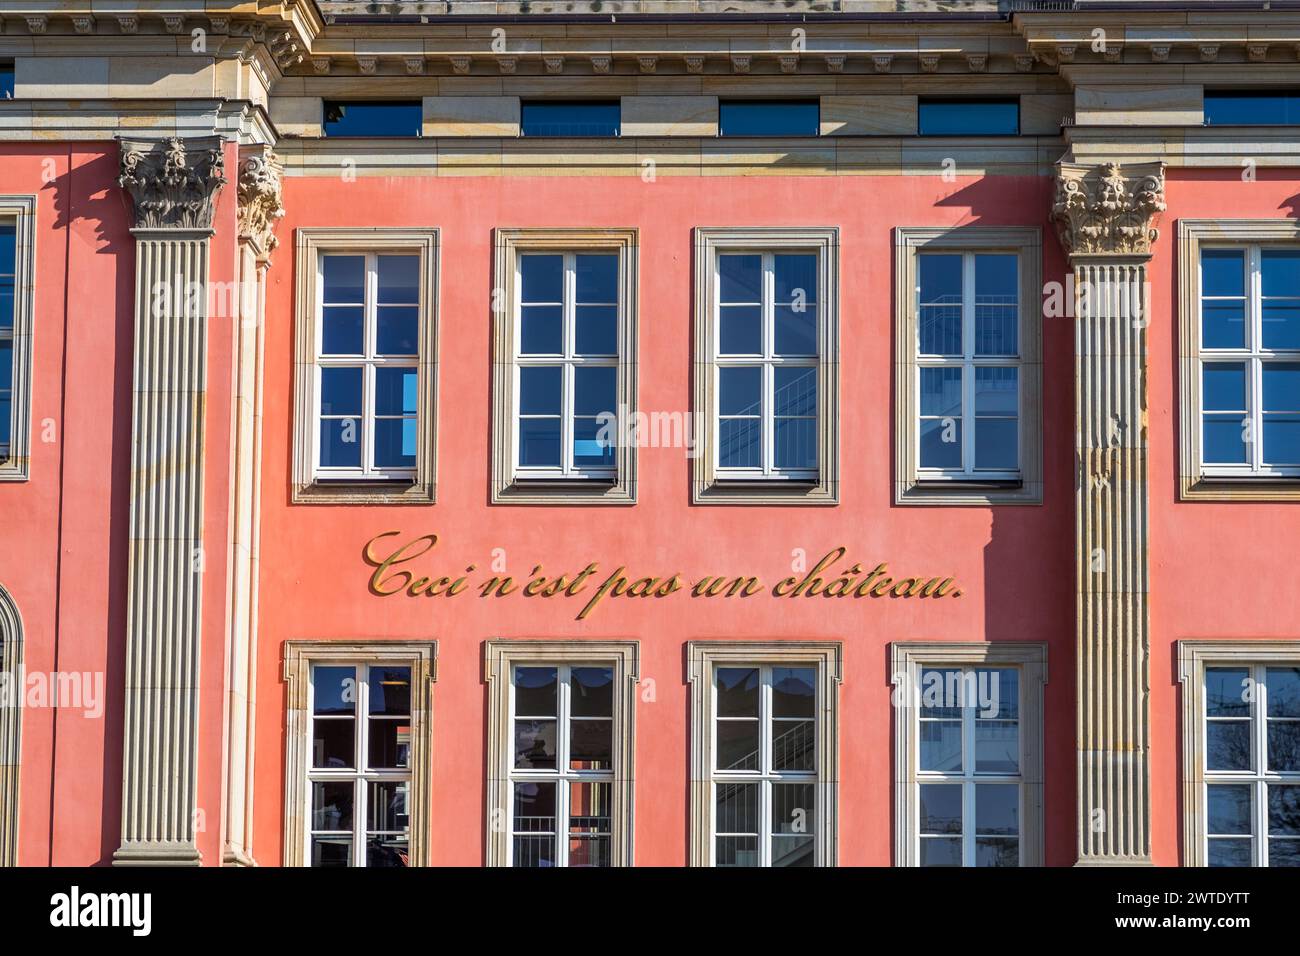 Sembra un castello, ma non lo e', ed e' quello che dice. Dietro le mura apparentemente storiche del vecchio Palazzo della città di Potsdam si trova l'edificio ultramoderno del Parlamento dello Stato di Brandeburgo. Il parlamento dello stato di Brandeburgo si trova dietro la facciata restaurata del Palazzo della città di Potsdam. L'artista Annette Paul ha aggiunto le parole "Ceci n'est pas un château" in lettere d'oro come ironico distanziamento dalla prima impressione che l'edificio dà, citando il dipinto di René Magritte di una pipa di tabacco intitolata "ceci n'est pas une pipe". Potsdam, Brandeburgo, Brandeburgo, Germania Foto Stock